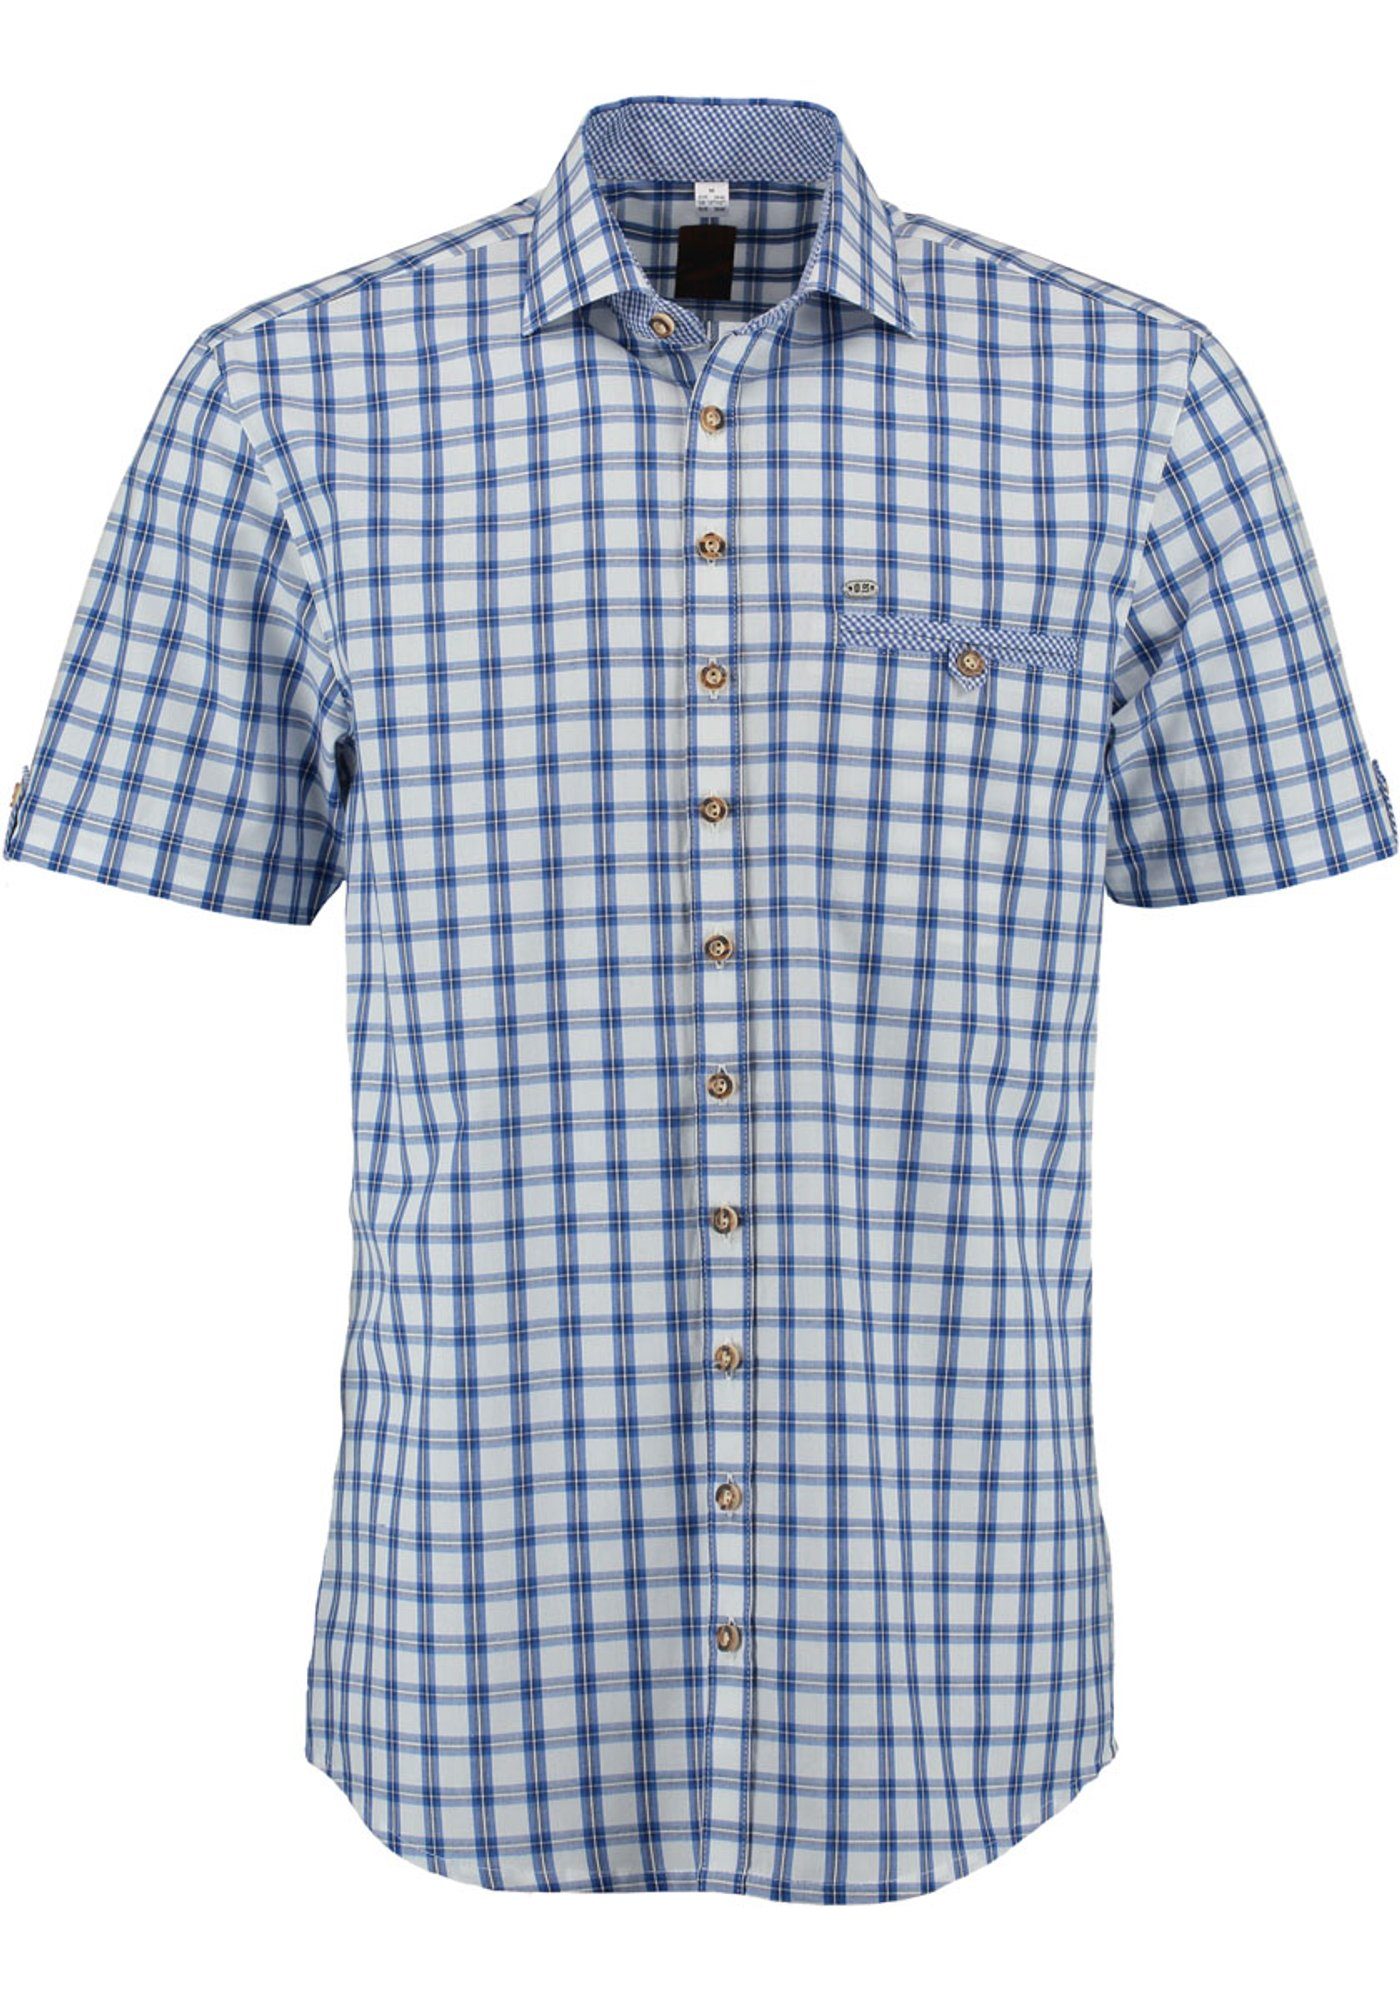 OS-Trachten Trachtenhemd Itunon Herren Kurzarmhemd mit aufgesetzter Brusttasche kornblau